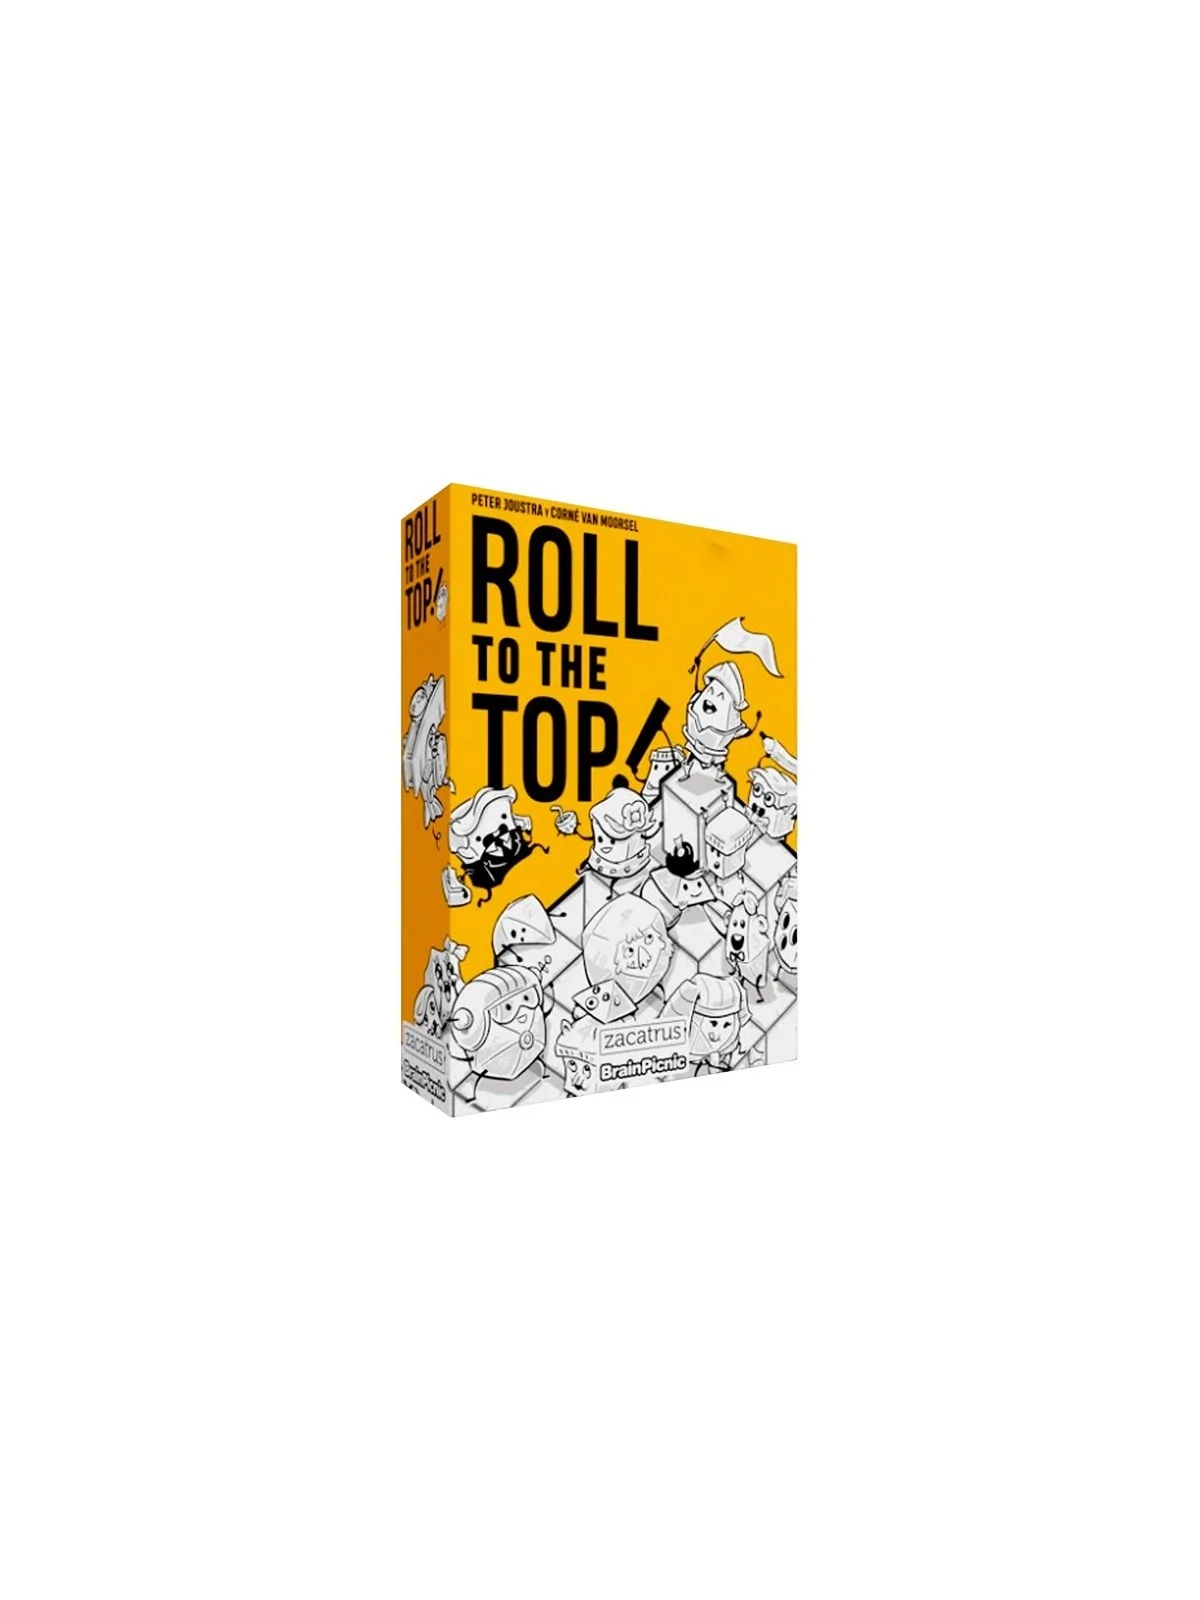 Comprar Roll to the Top barato al mejor precio 11,95 € de Zacatrus